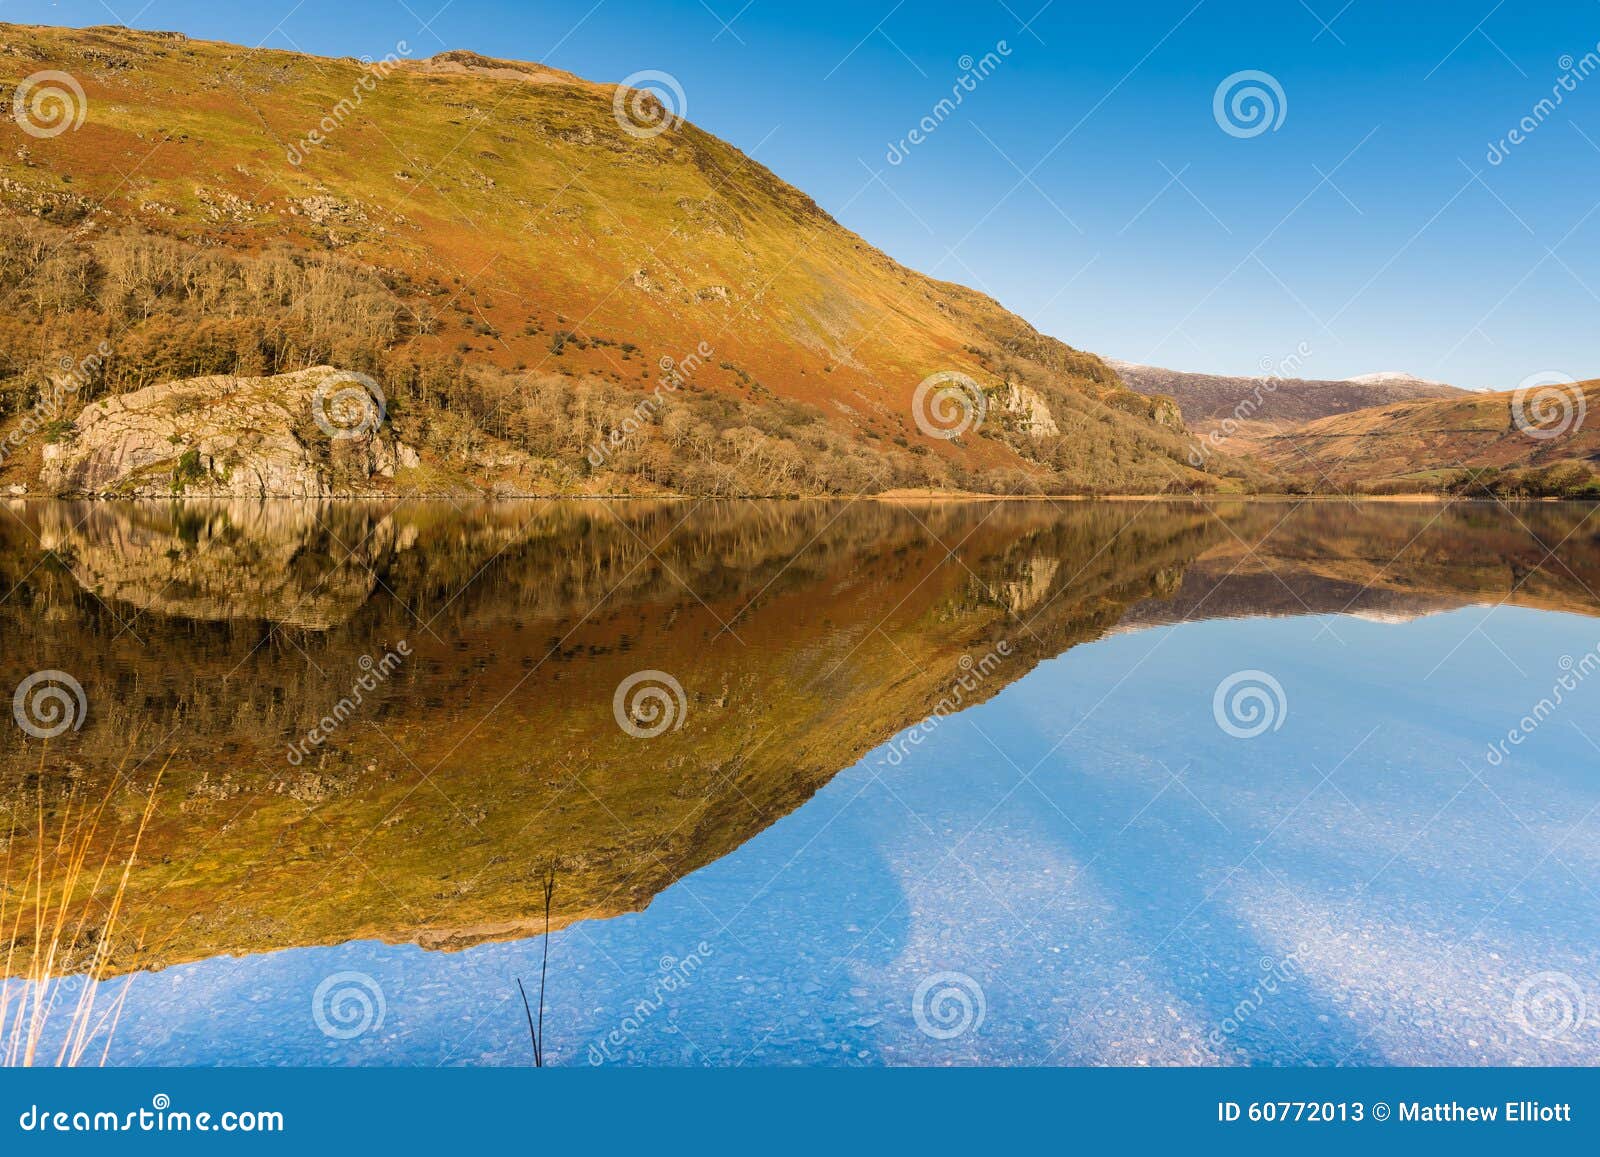 Llyn Gwynant Reflection, Snowdonia National Park. Stock Image - Image ...